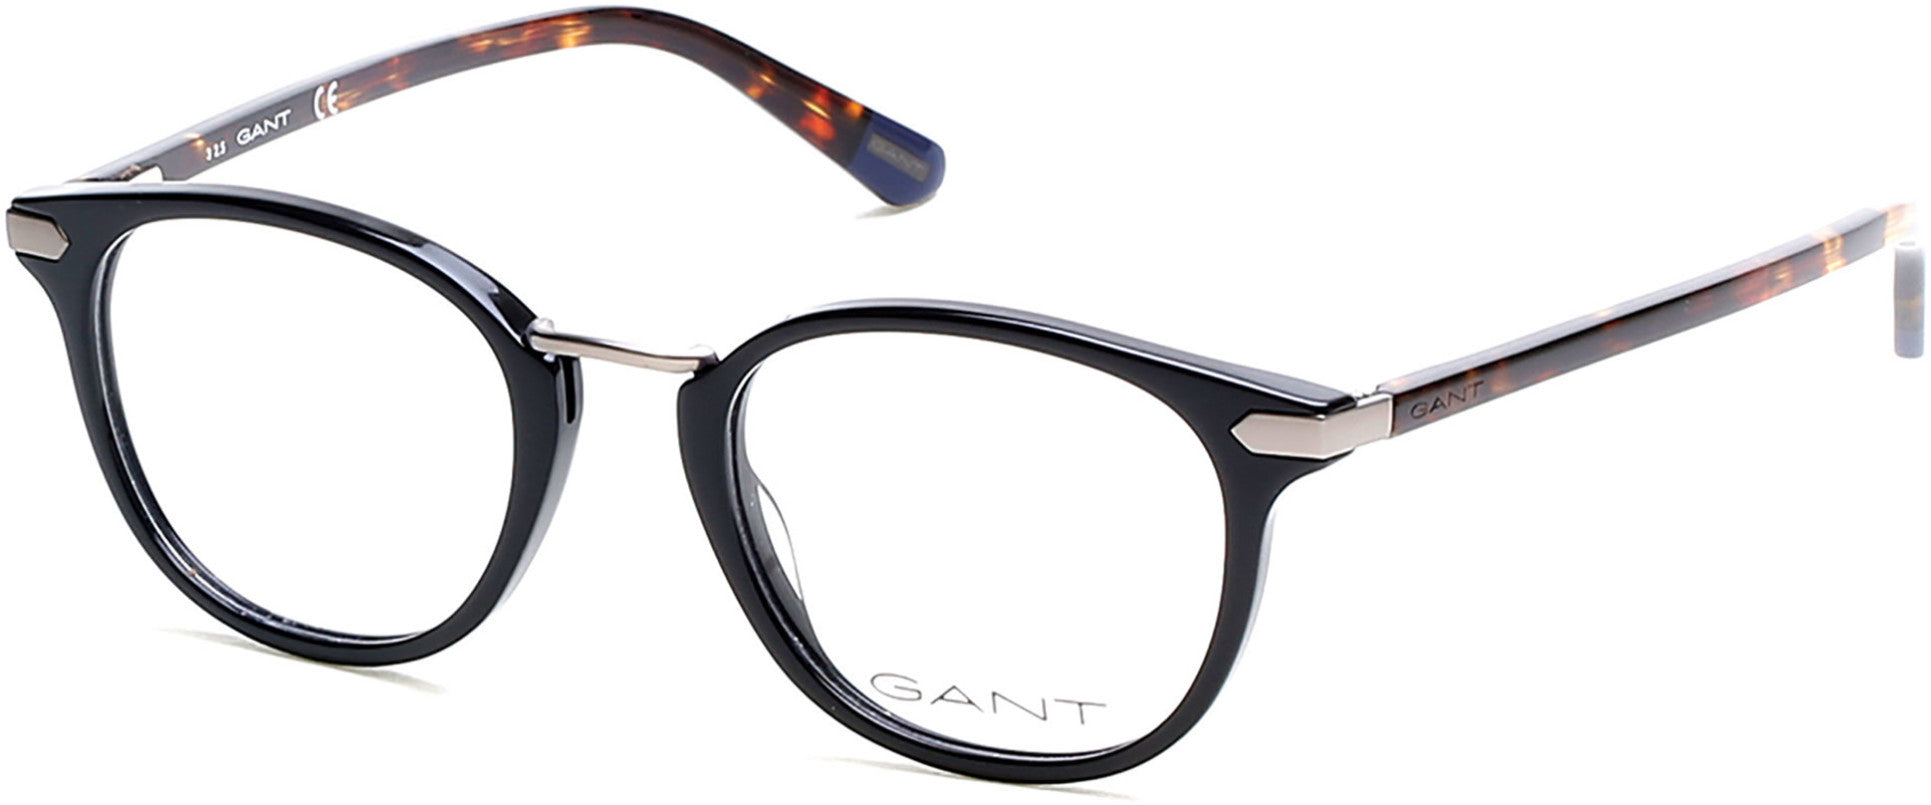 Gant GA3115 Round Eyeglasses 001-001 - Shiny Black